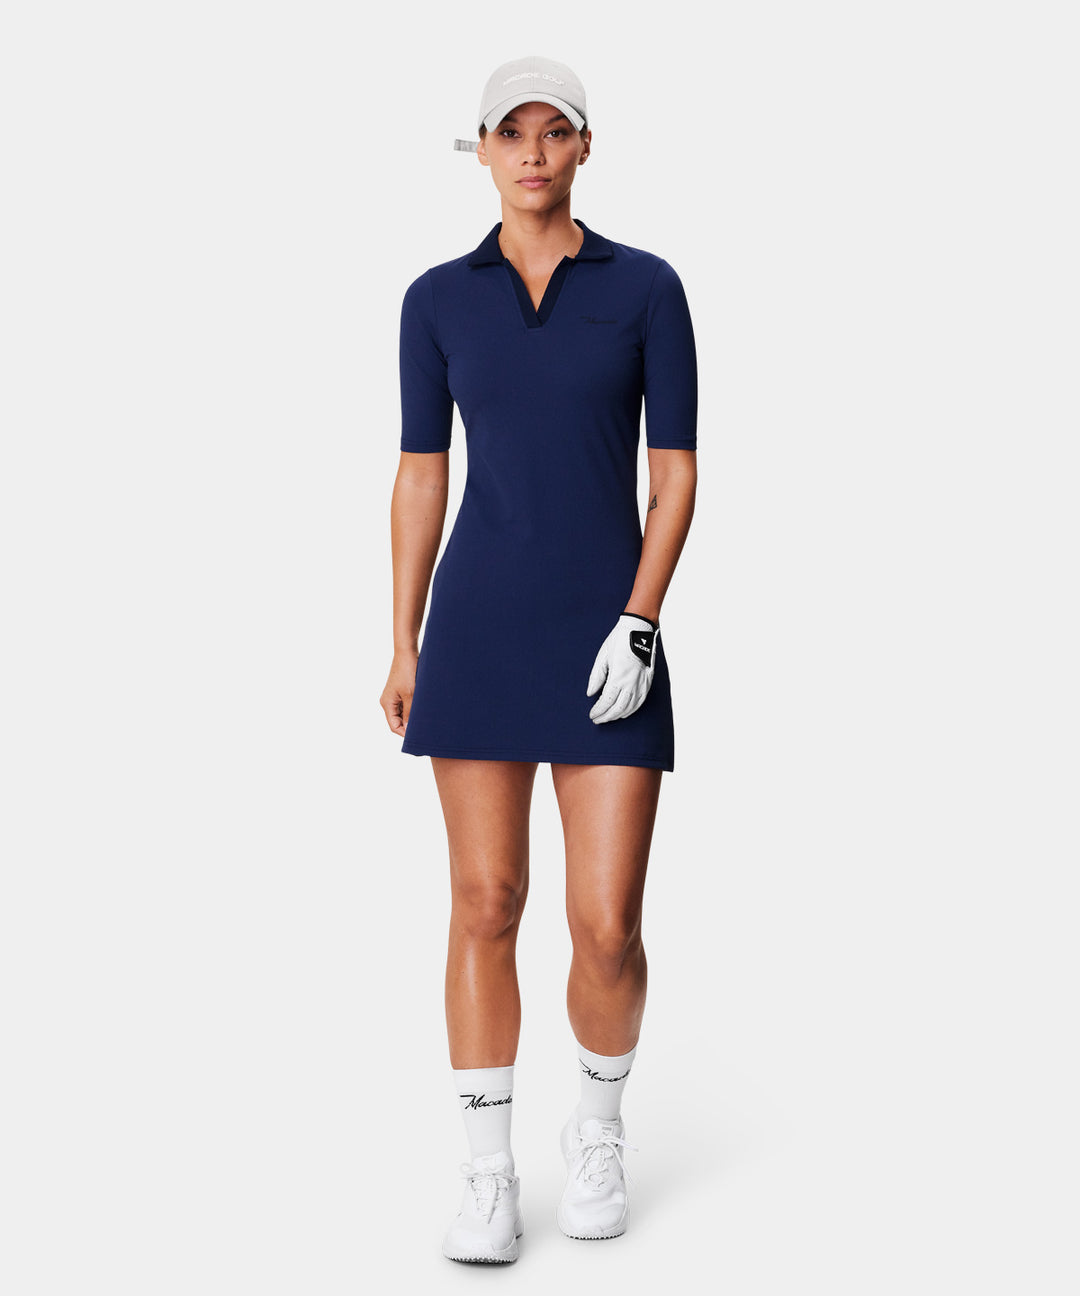 Lana Open Collar Dress Macade Golf